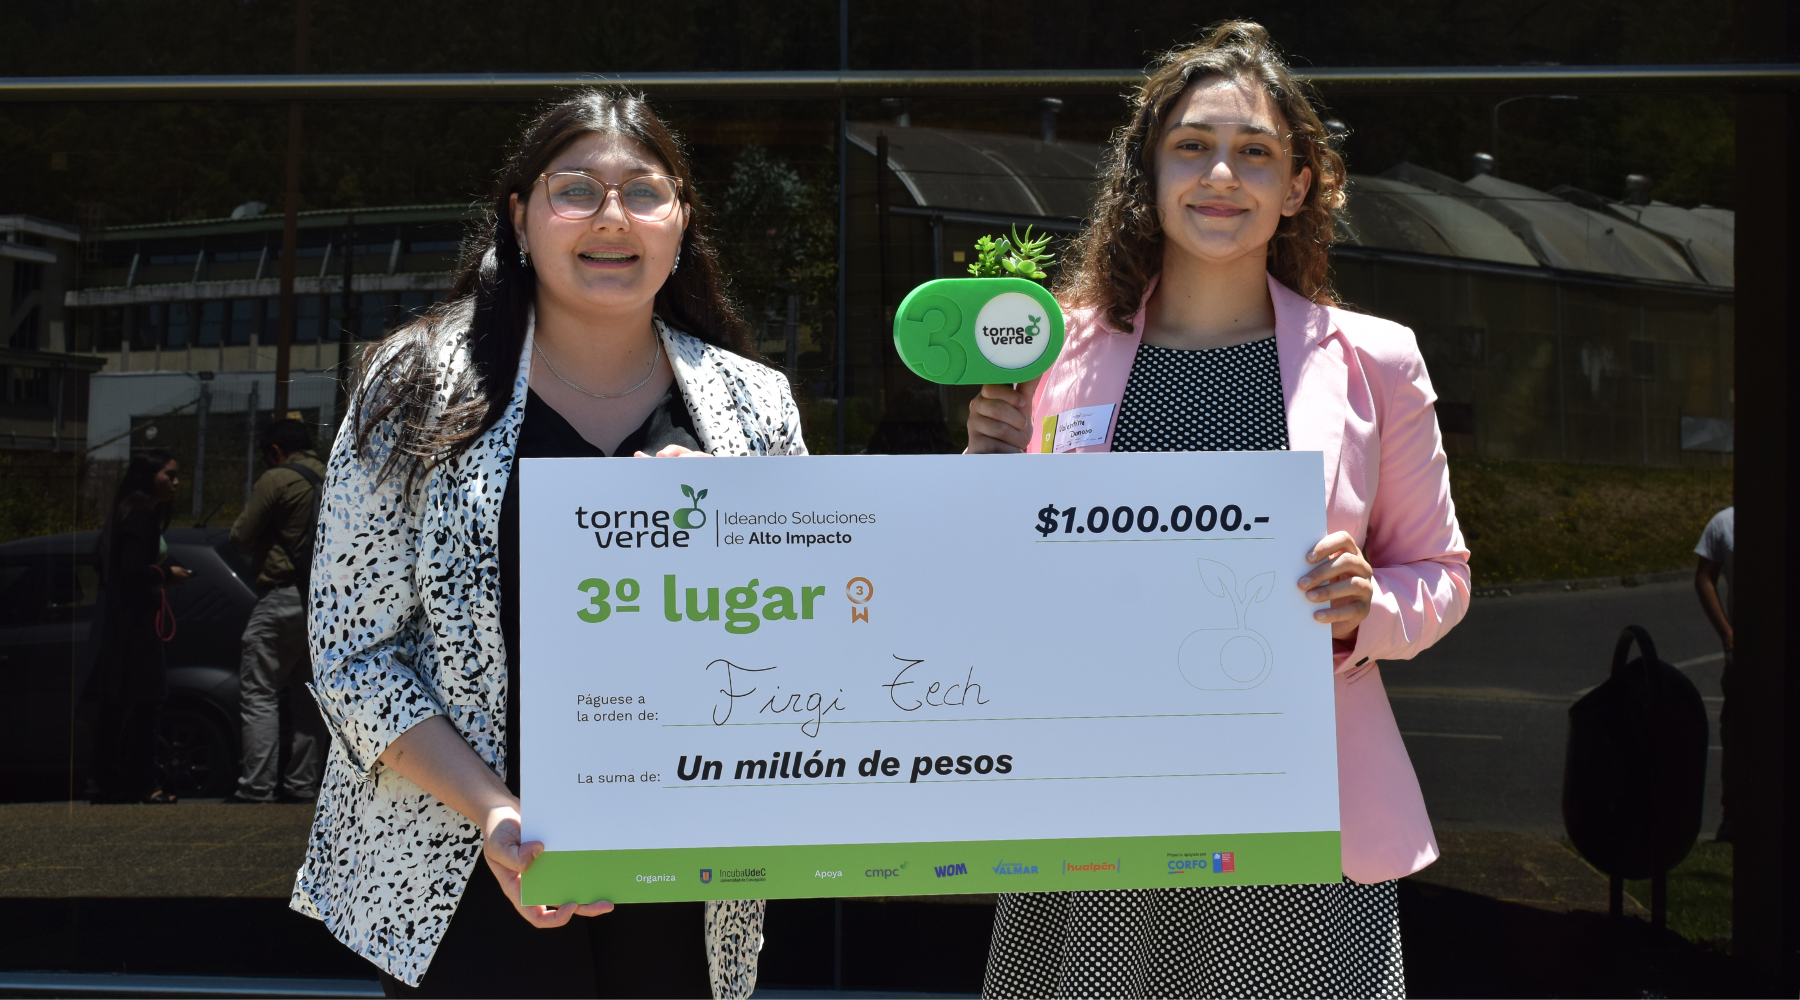 Firgi Tech obtuvo el tercer lugar en la iniciativa "Torneo Verde" organizada por Incuba UdeC